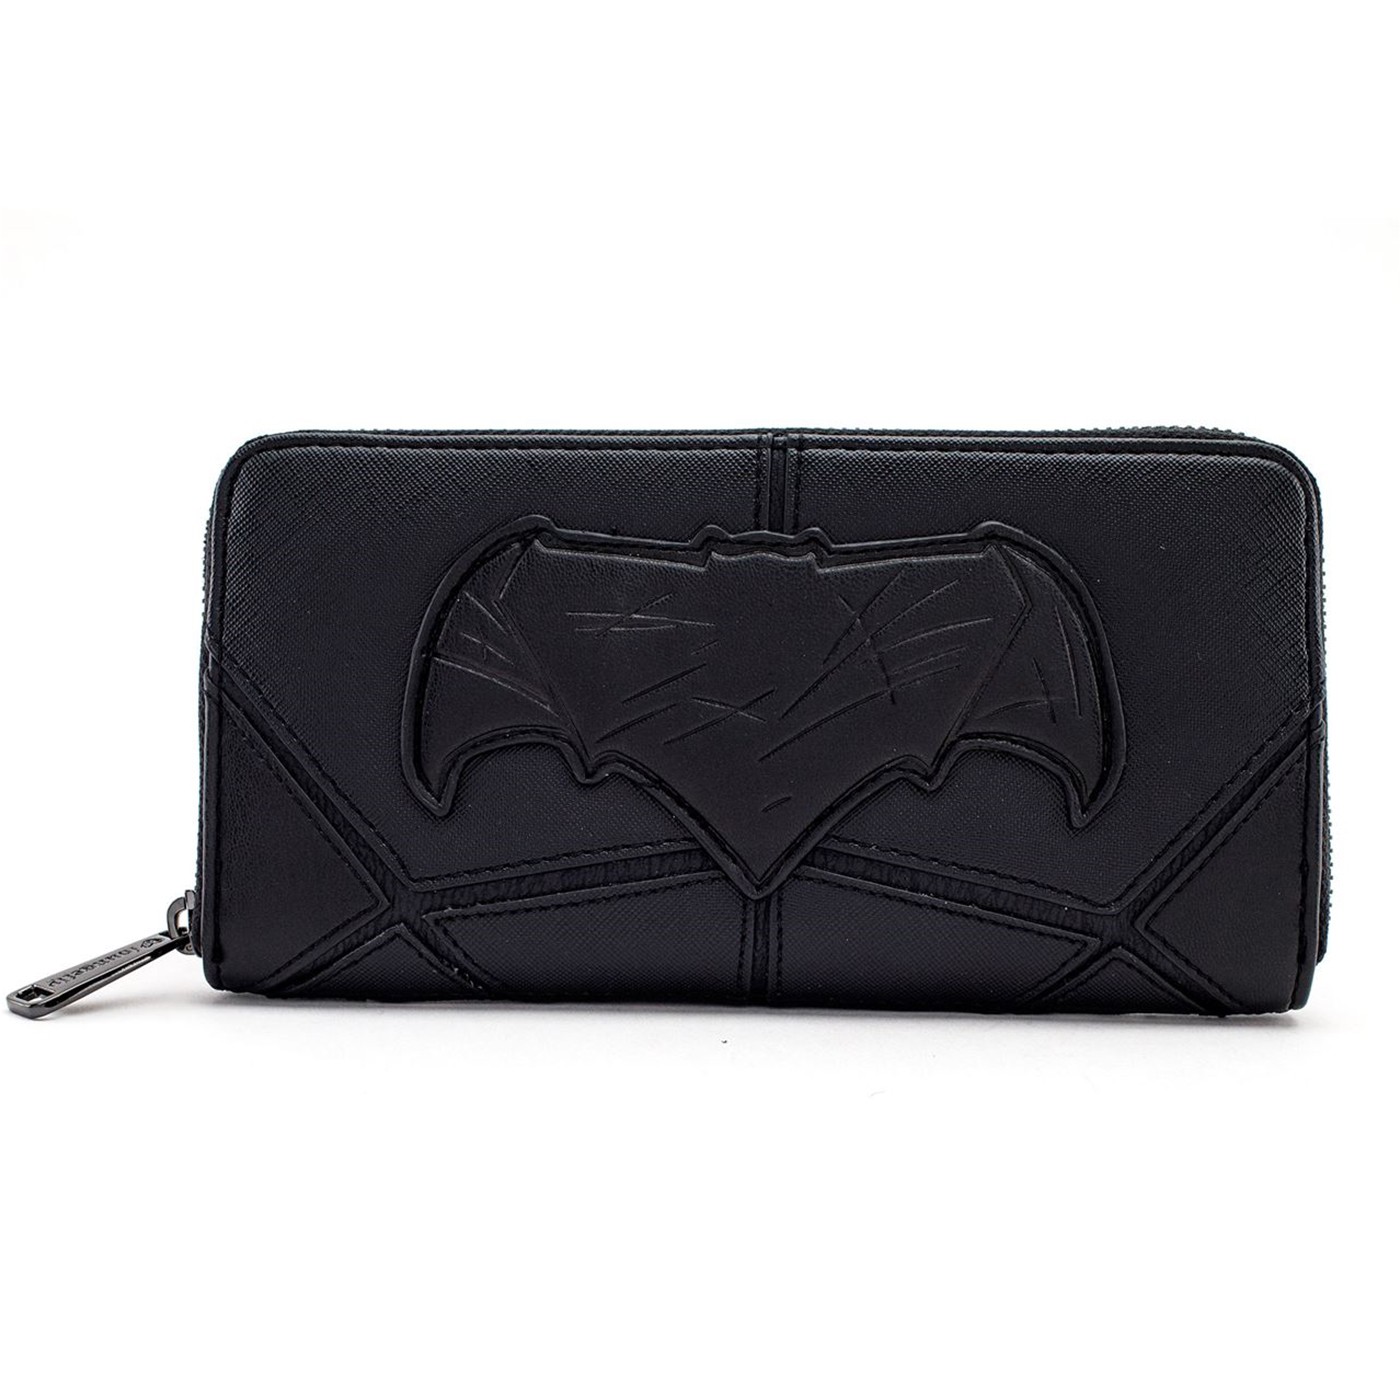 Batman Justice League Armor Zip Around Wallet